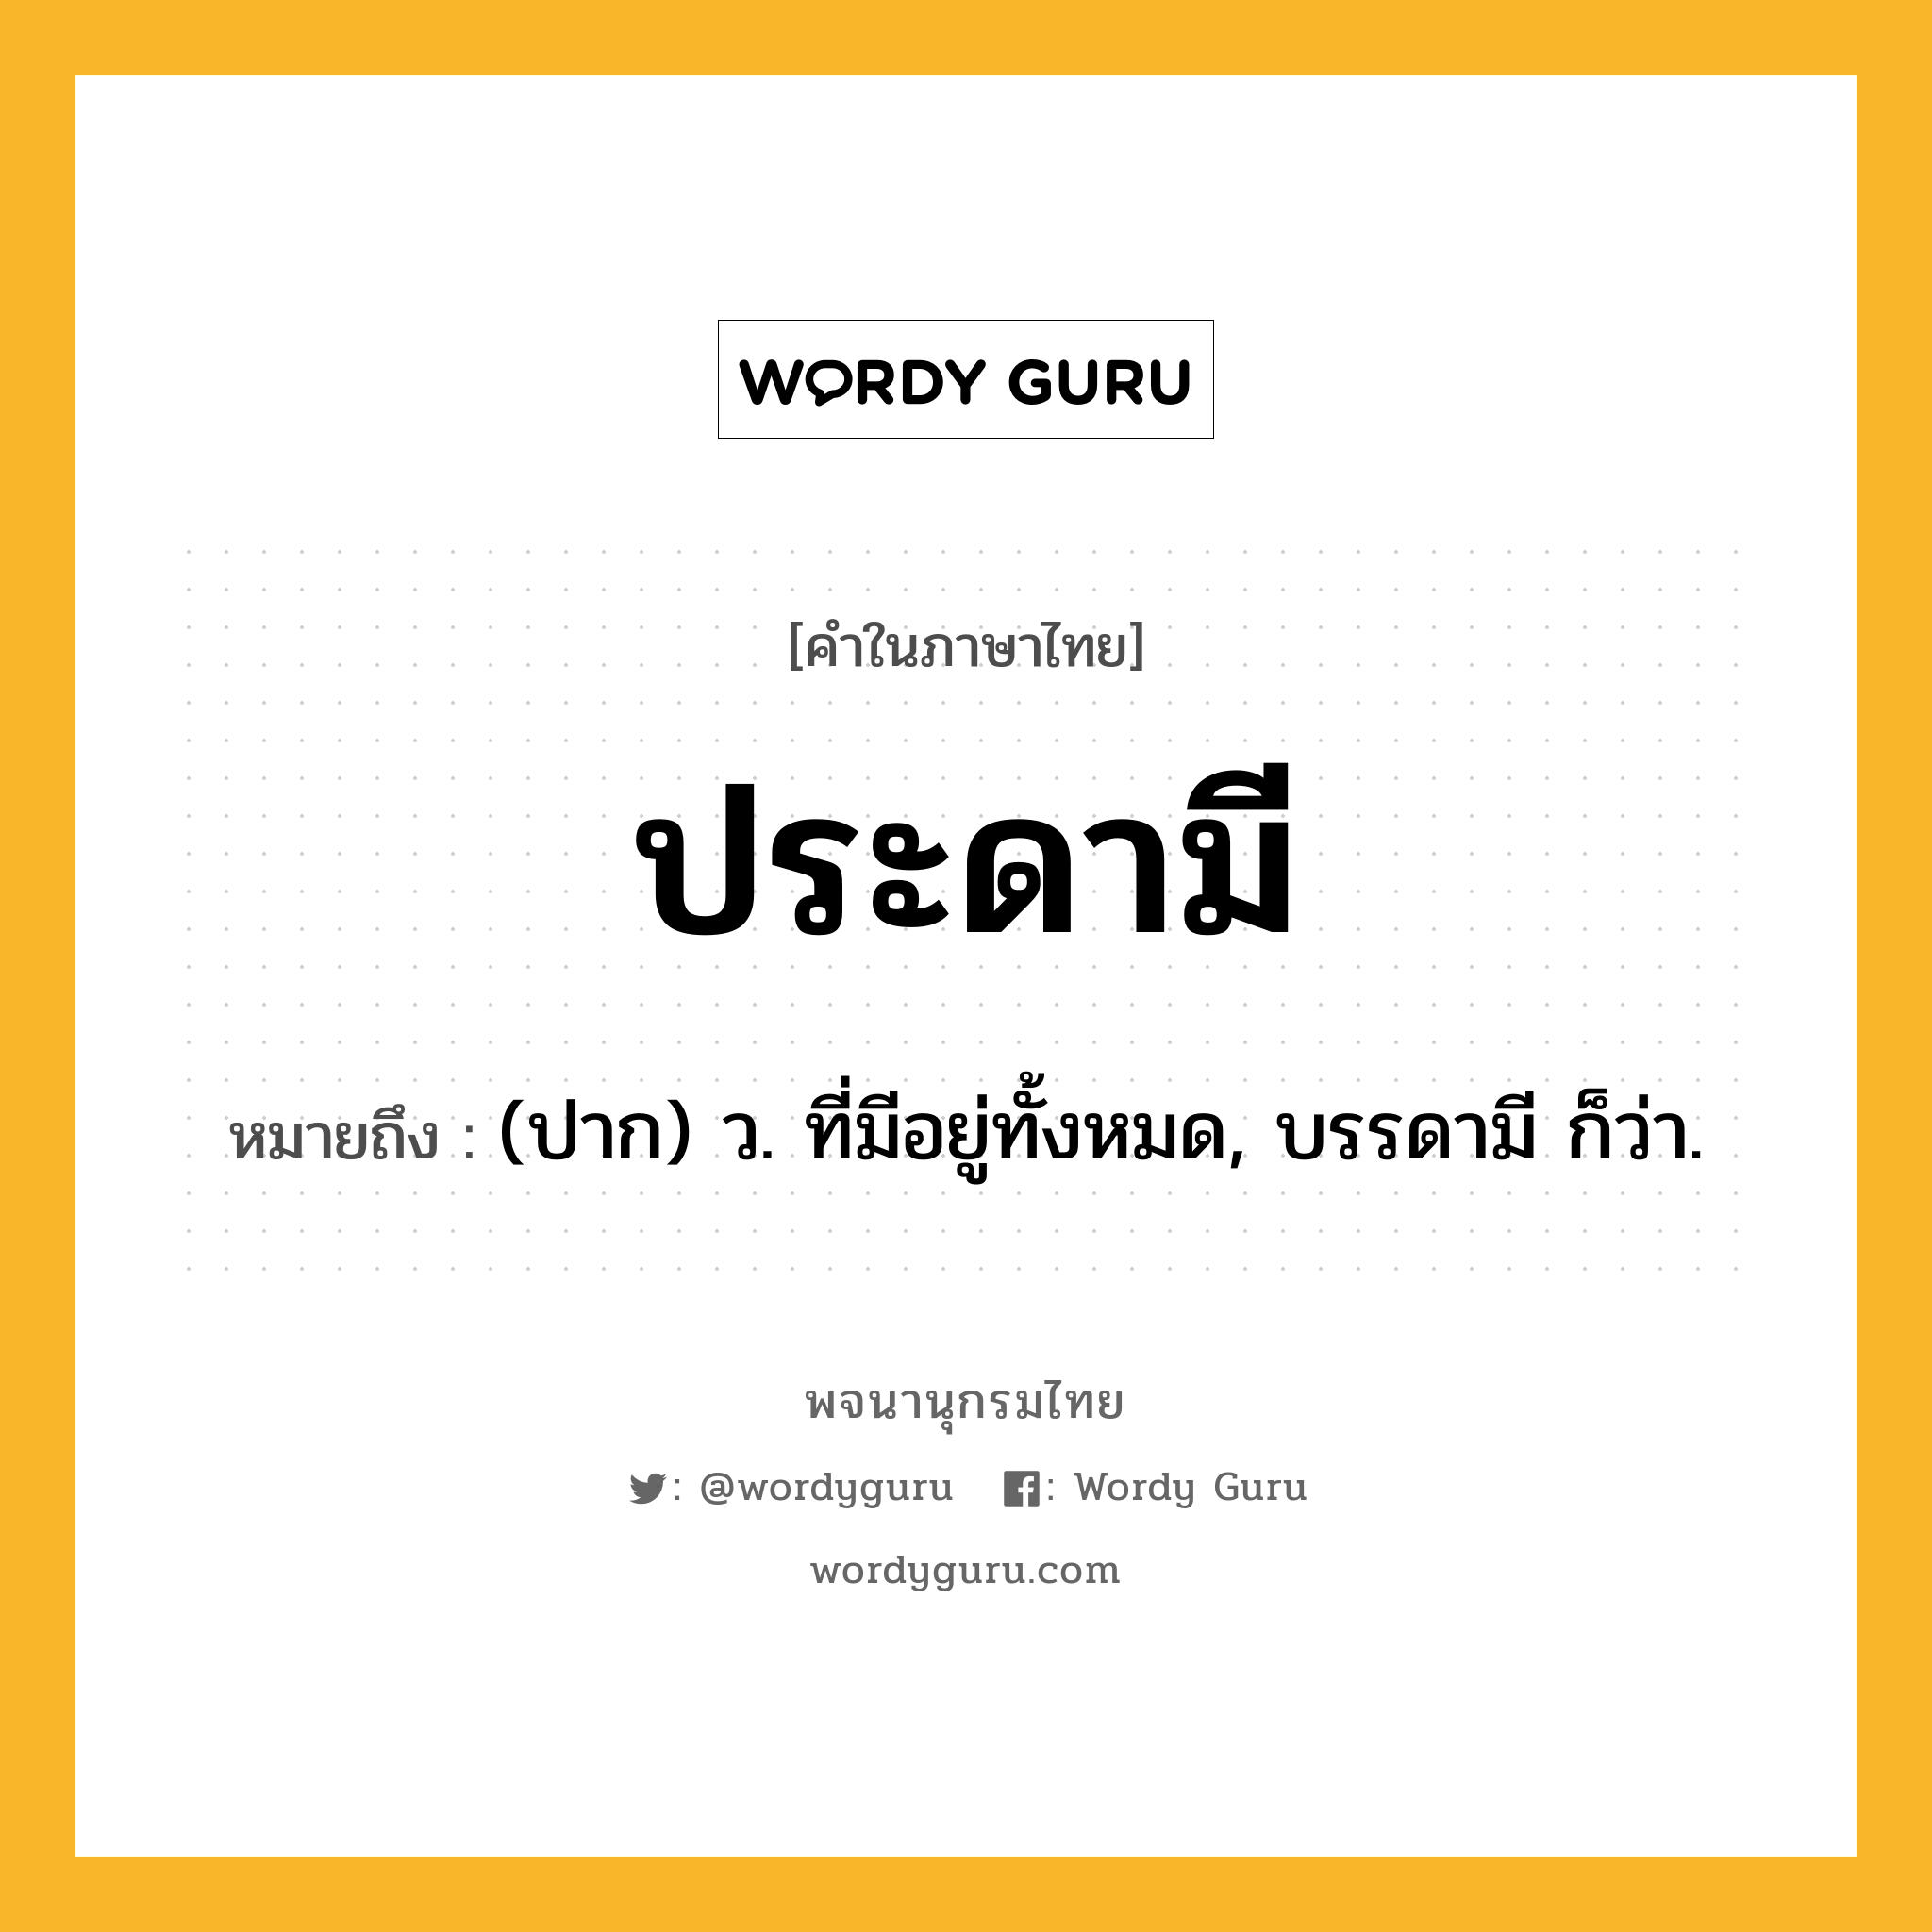 ประดามี ความหมาย หมายถึงอะไร?, คำในภาษาไทย ประดามี หมายถึง (ปาก) ว. ที่มีอยู่ทั้งหมด, บรรดามี ก็ว่า.